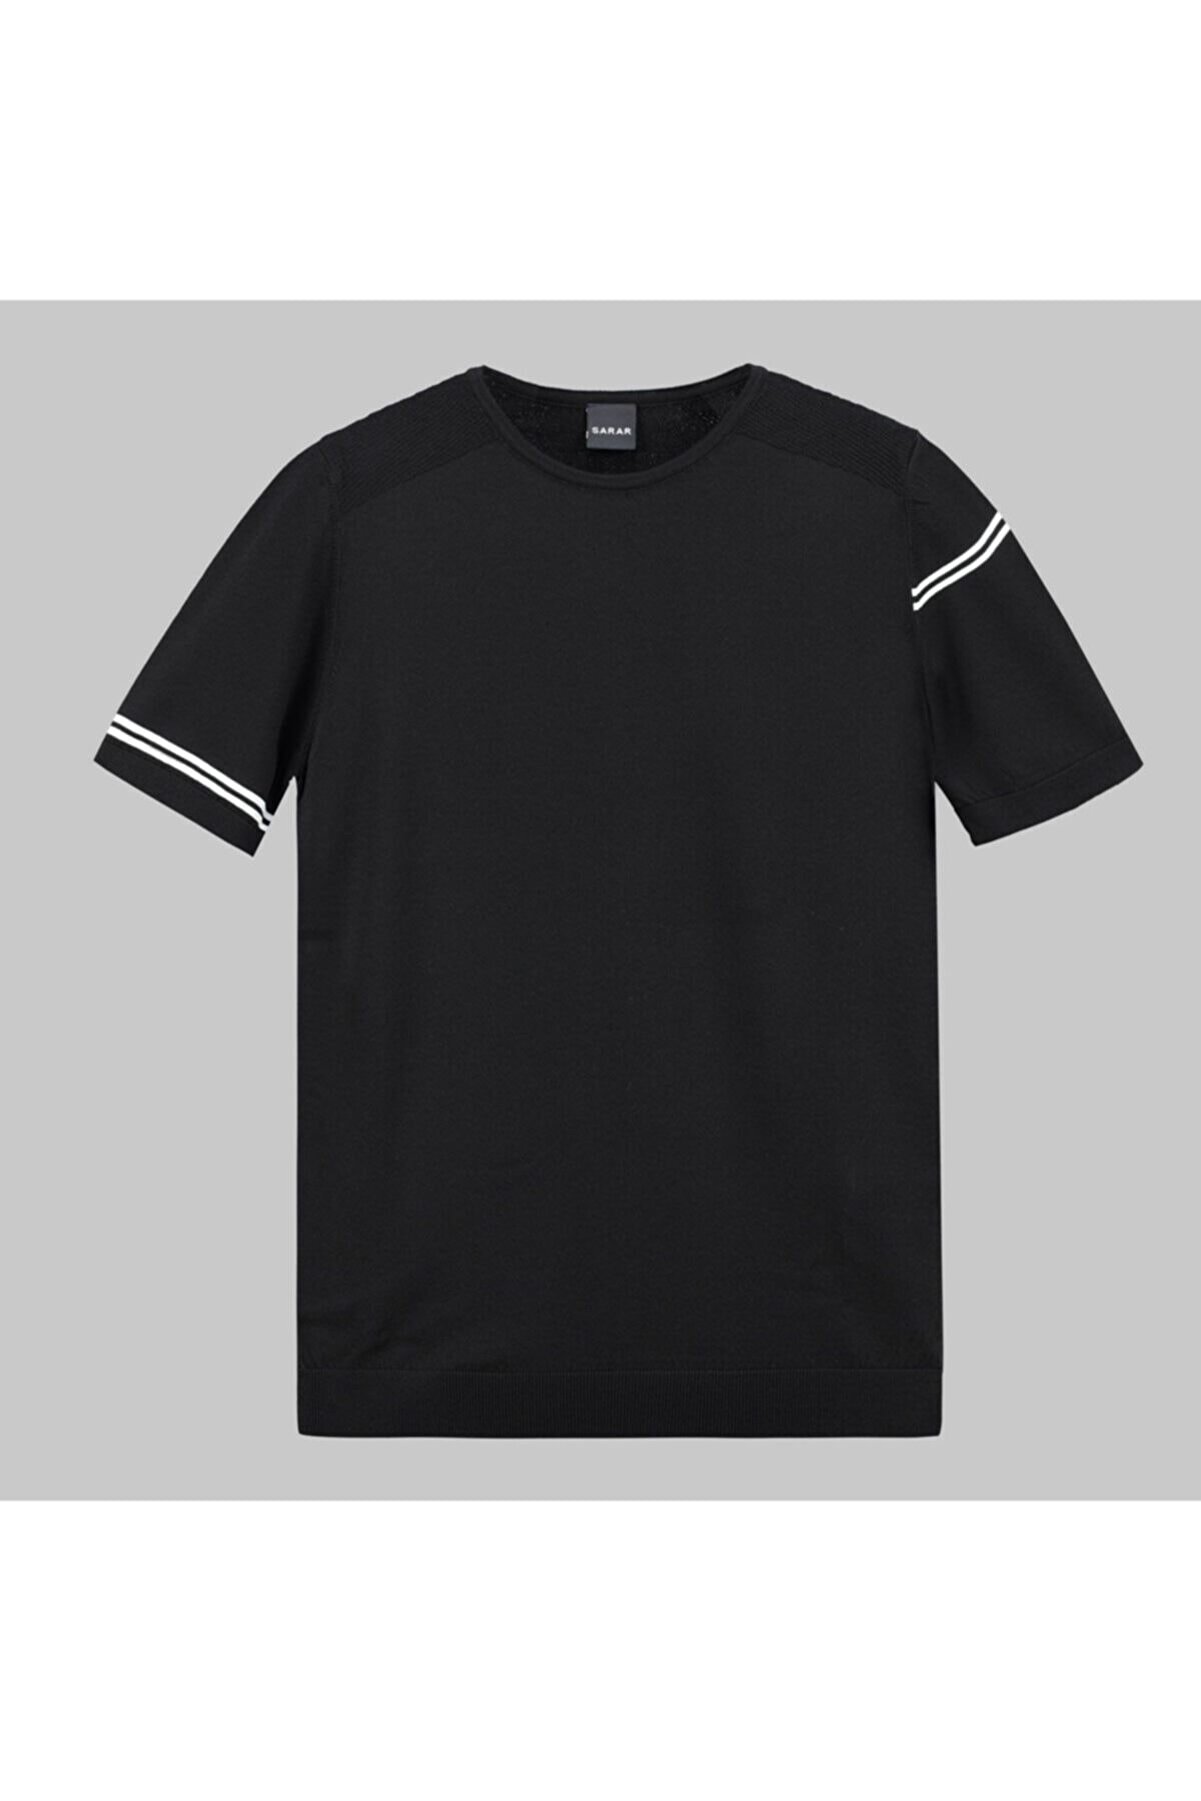 Sarar 0 Yaka Siyah Ince Triko T-shirt